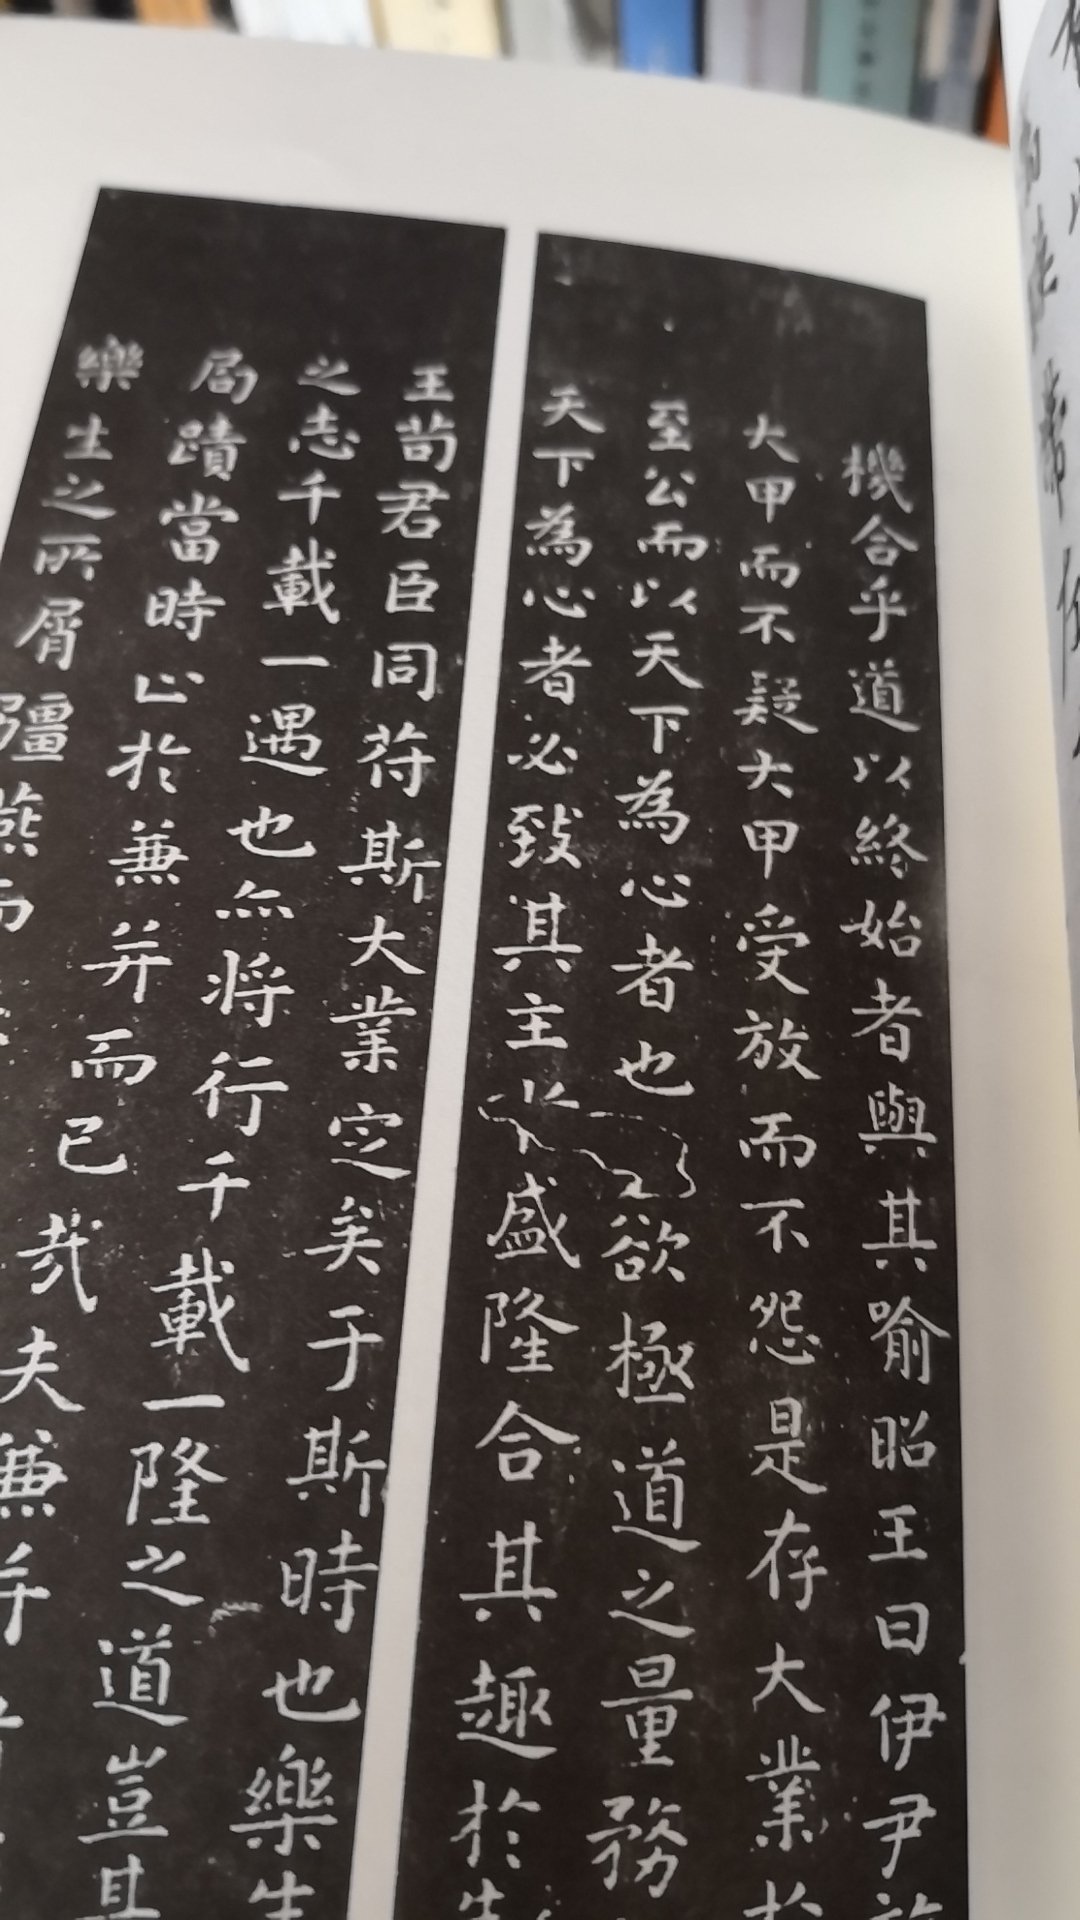 名家名作。中华书局出的。藏一本。正文前有影印的历代名家名帖。